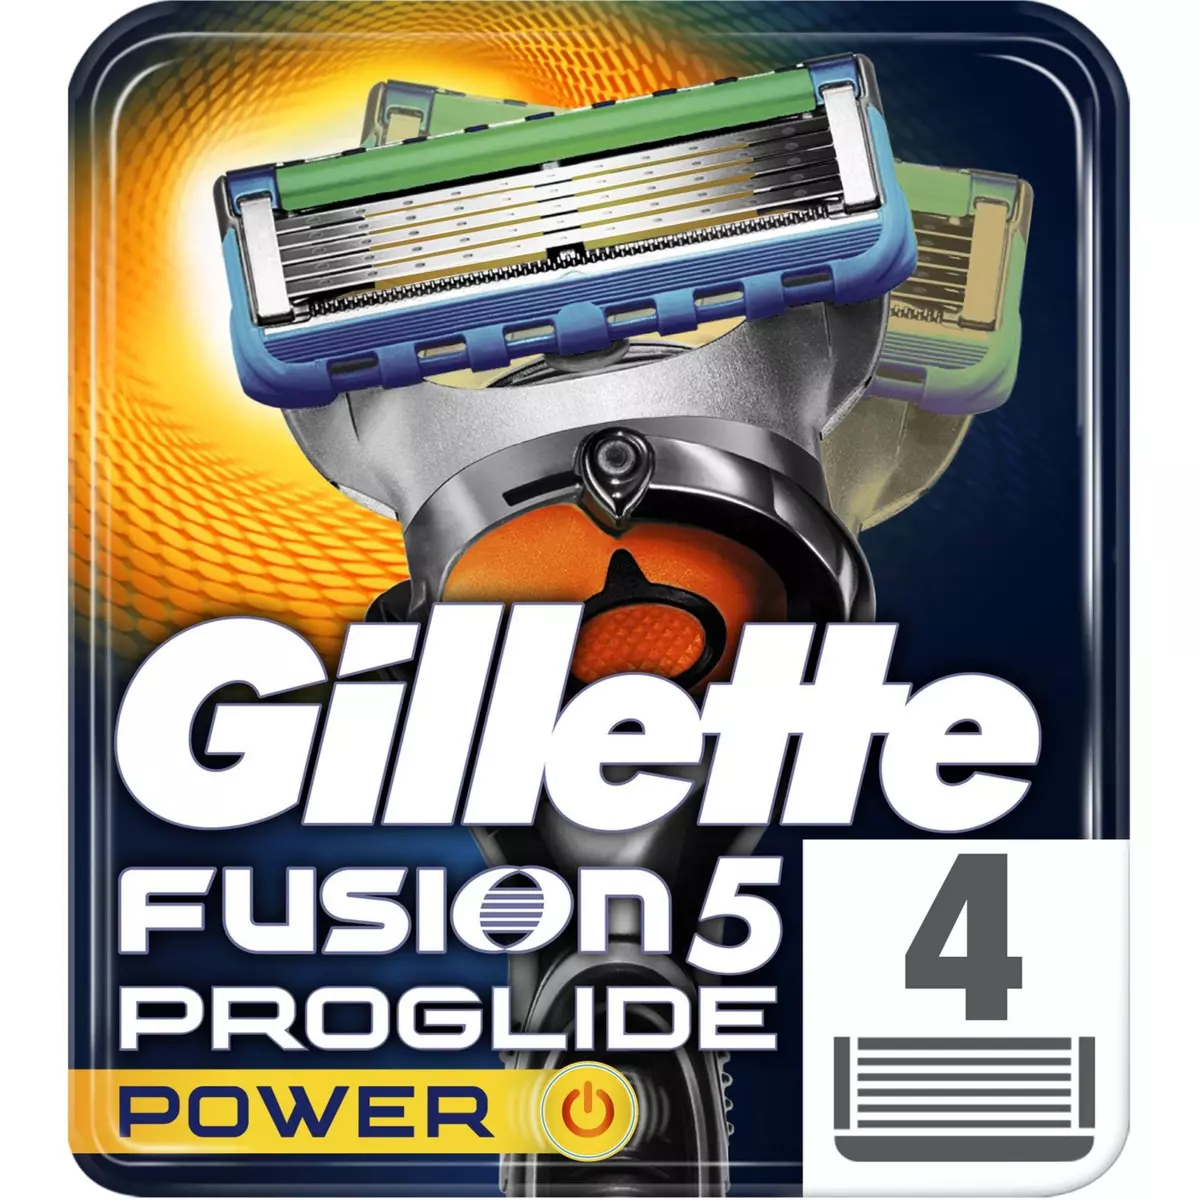 GILLETTE Fusion5 Proshield Power recharge lames de rasoir 4 recharges